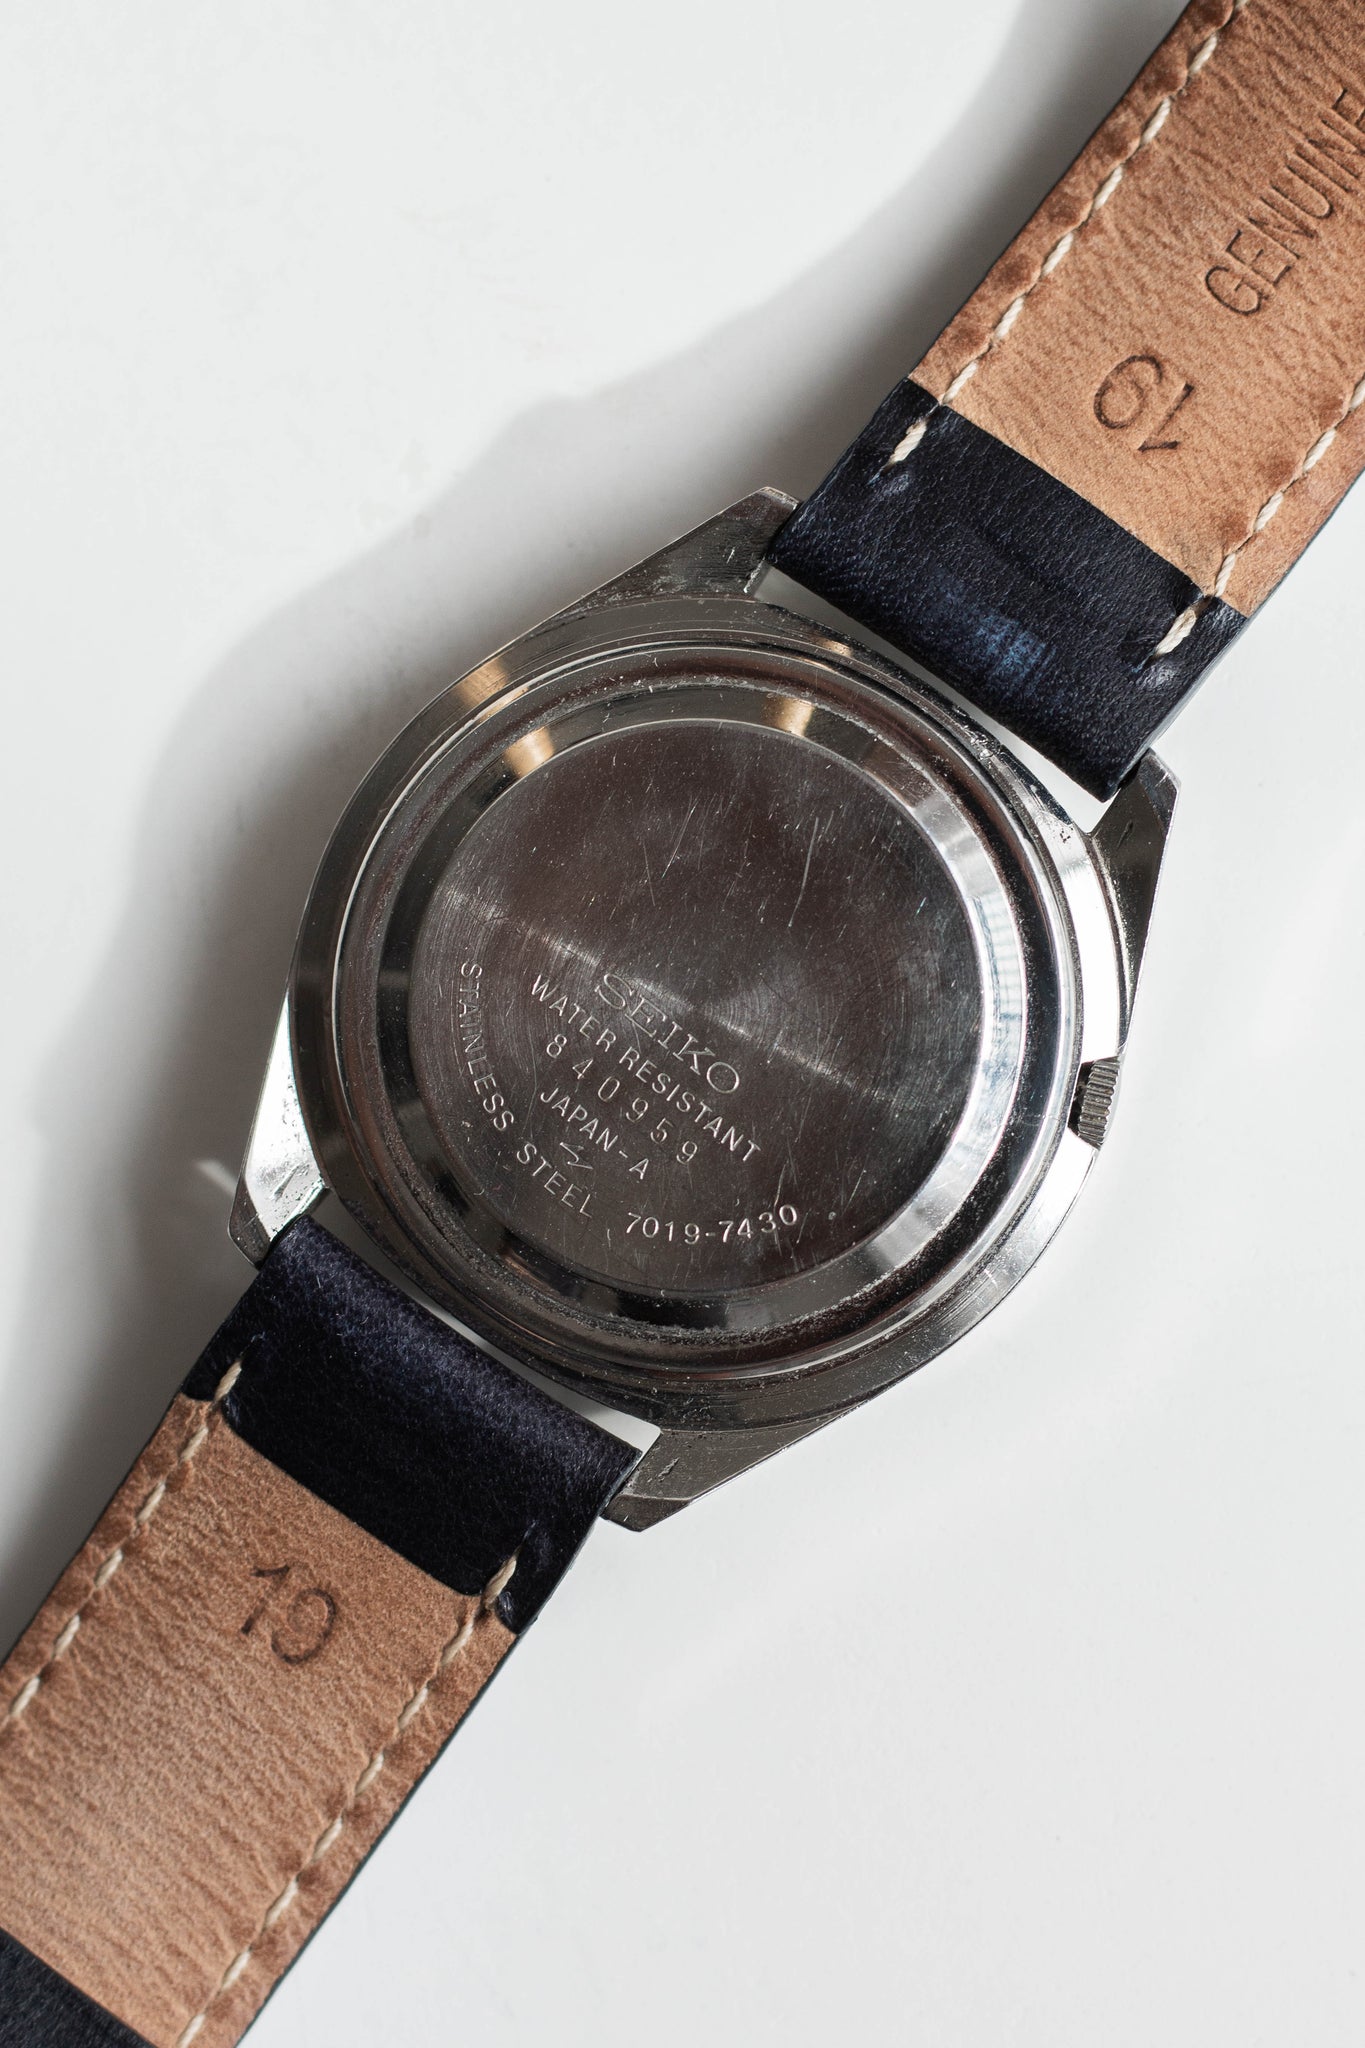 Seiko Actus Ref. 7019-7430 1978 | Vintage & Pre-Owned Luxury Watches – Wynn  & Thayne